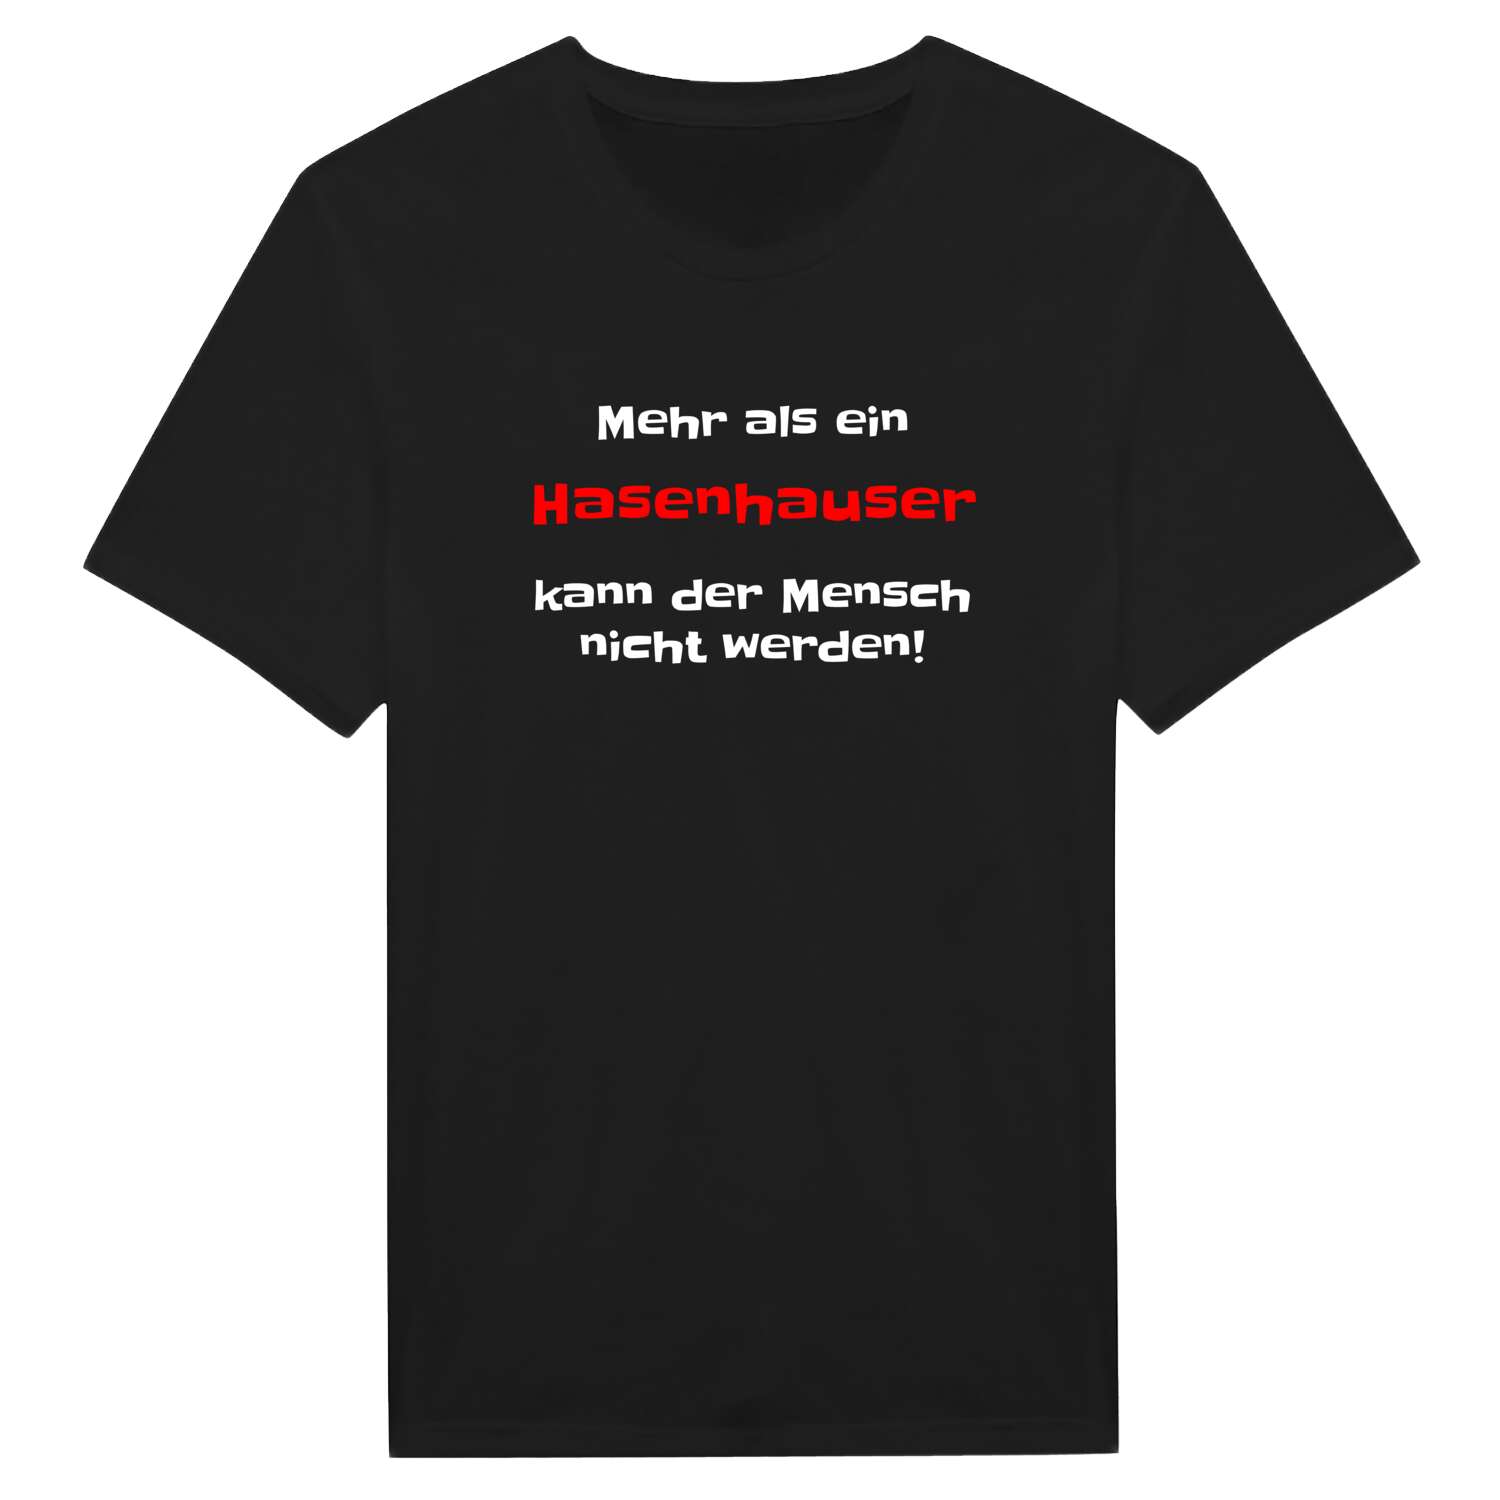 Hasenhaus T-Shirt »Mehr als ein«